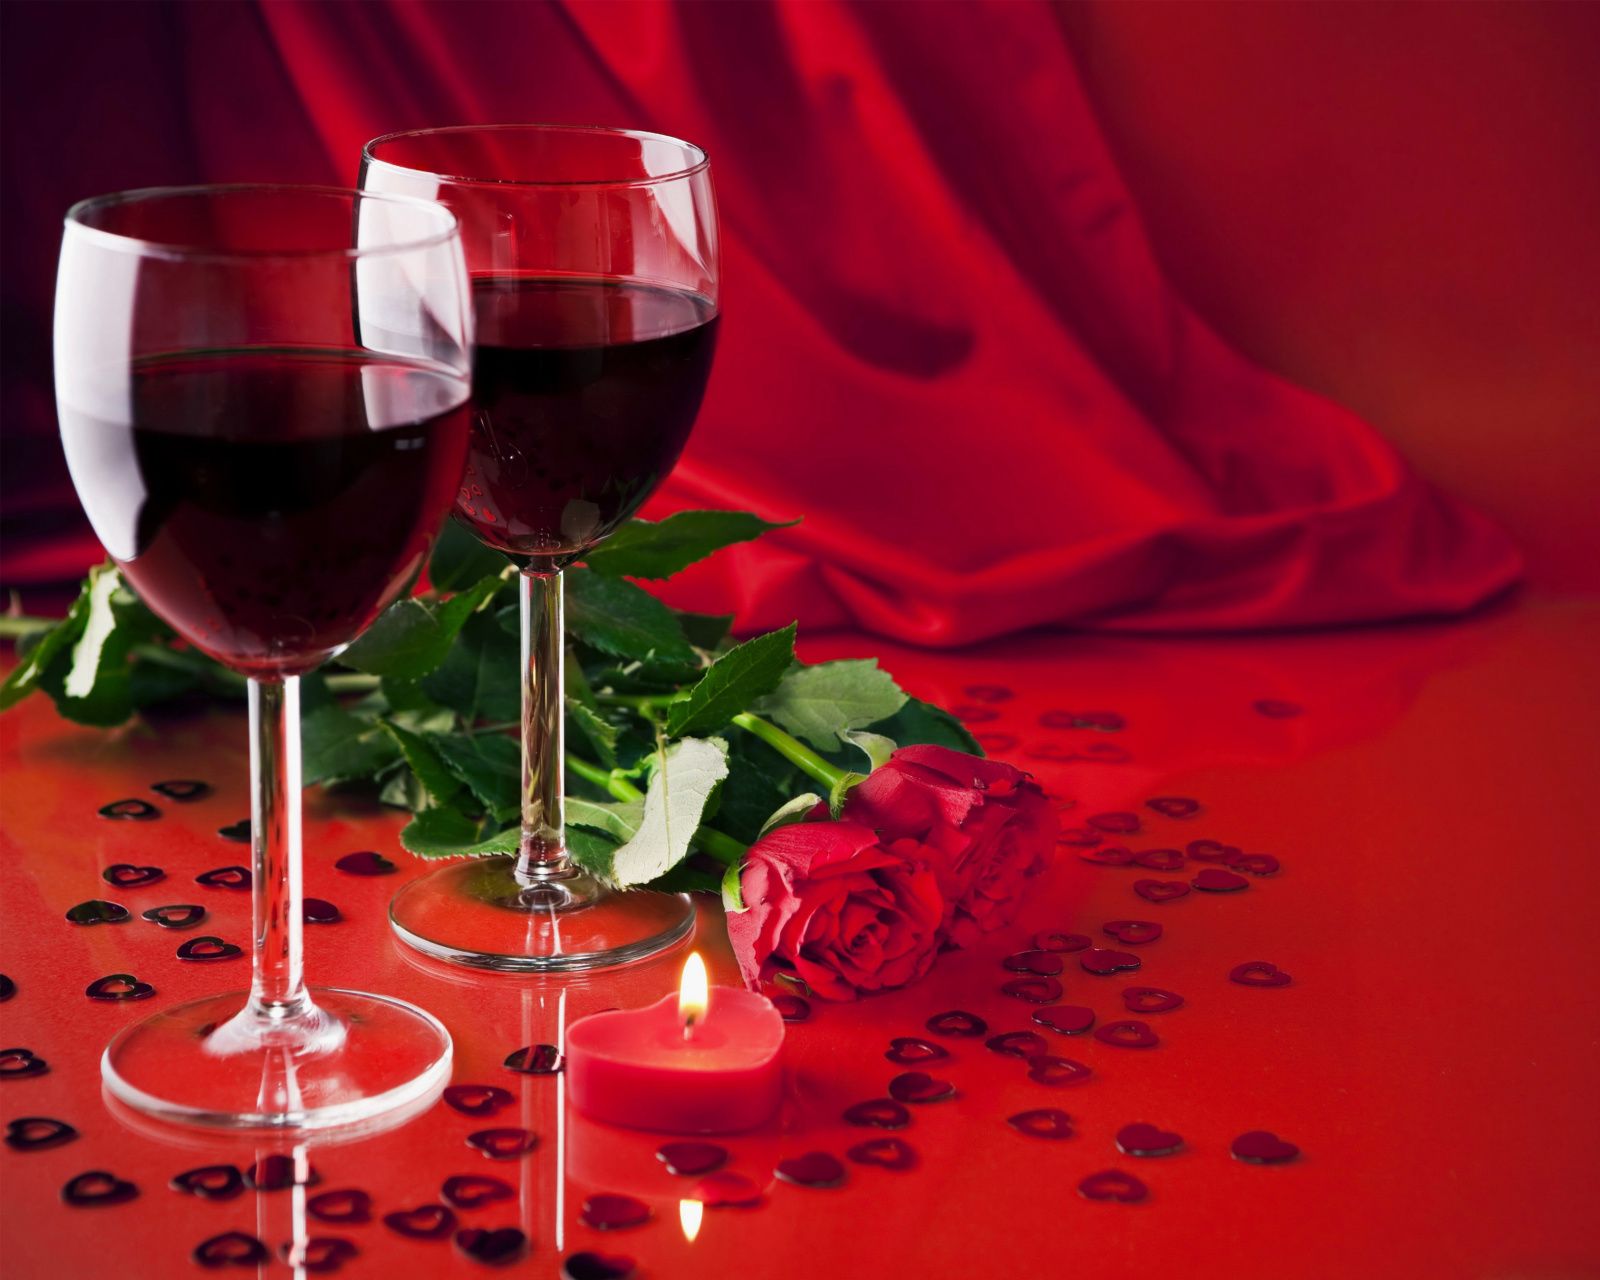 Обои Romantic with Wine 1600x1280